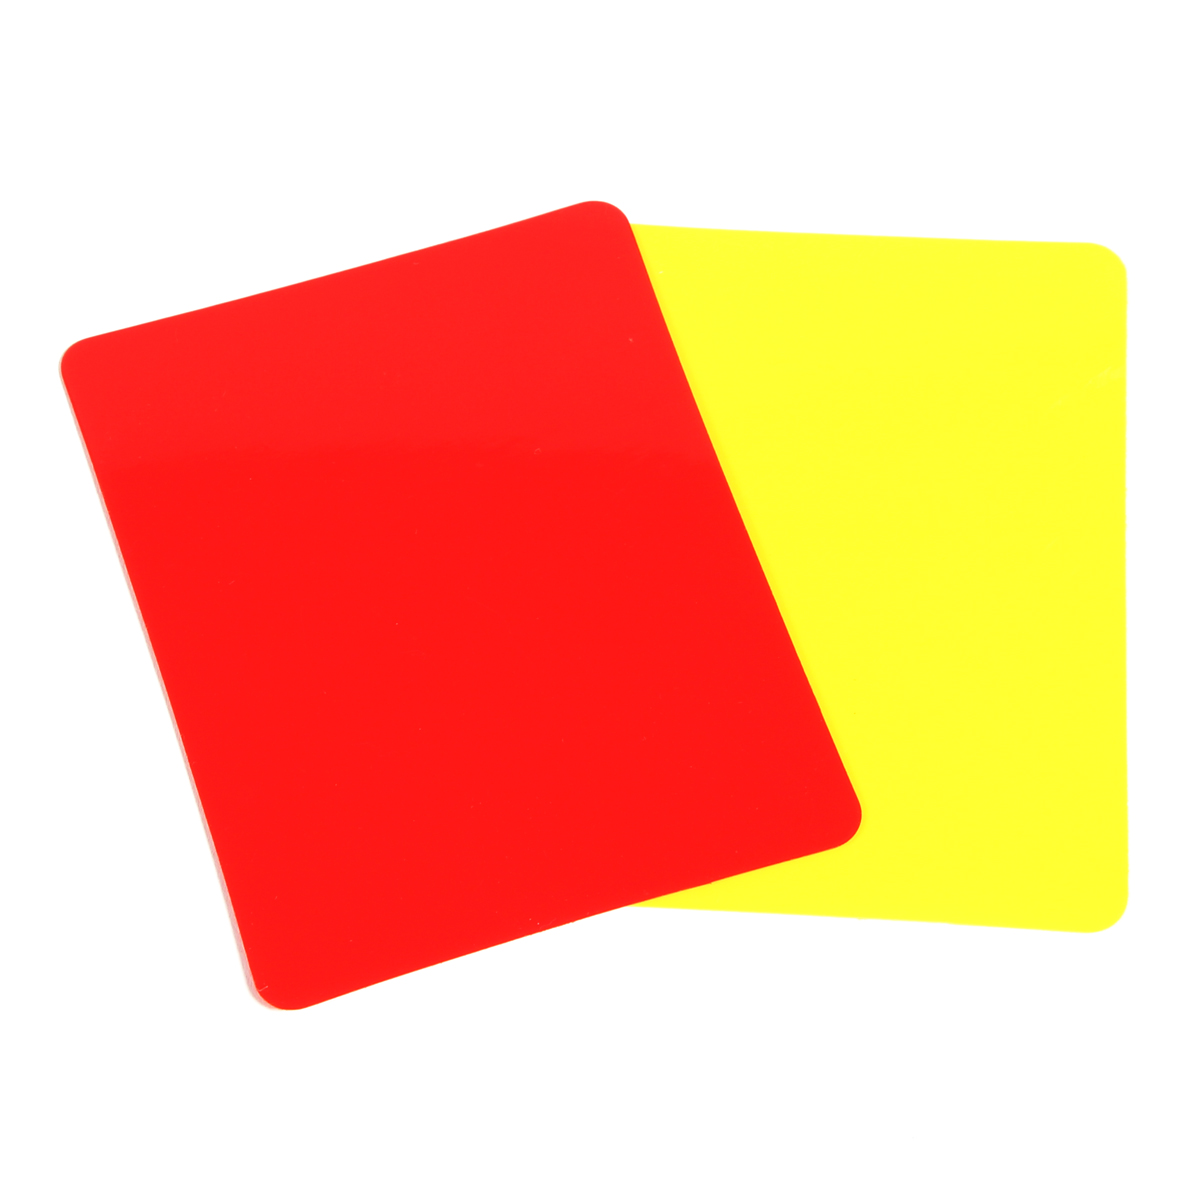 Tarjetas De Árbitro De Pvc (juego De 2, 1 Roja Y 1 Amarilla)  MKP